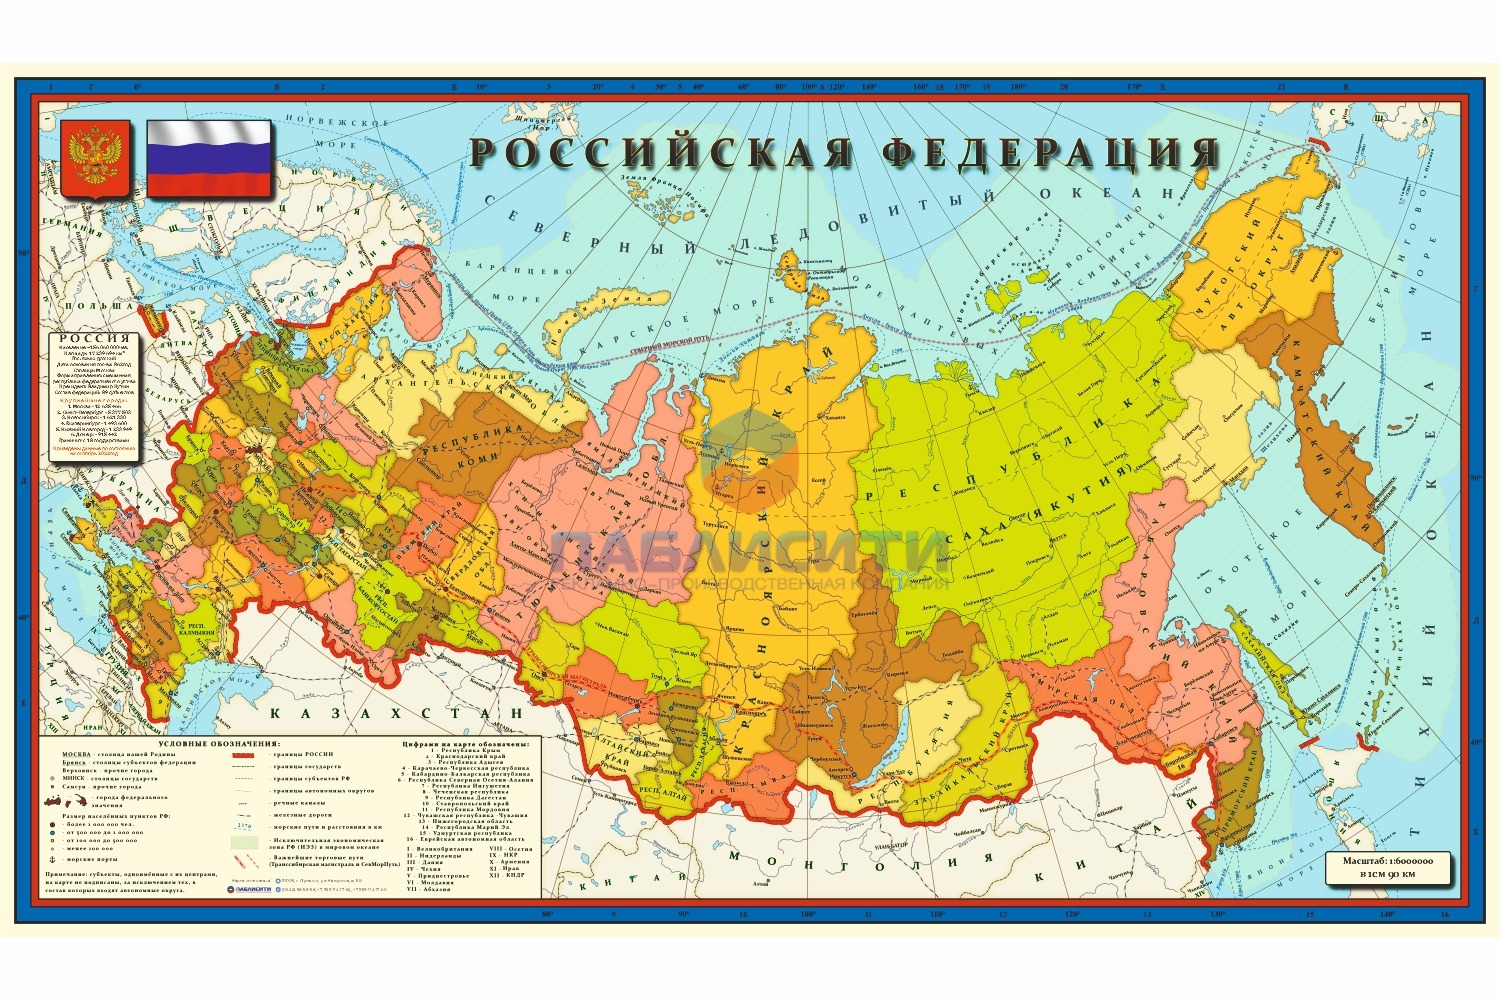 Карта Российской Федерации 1320х770мм, в 1см 90км